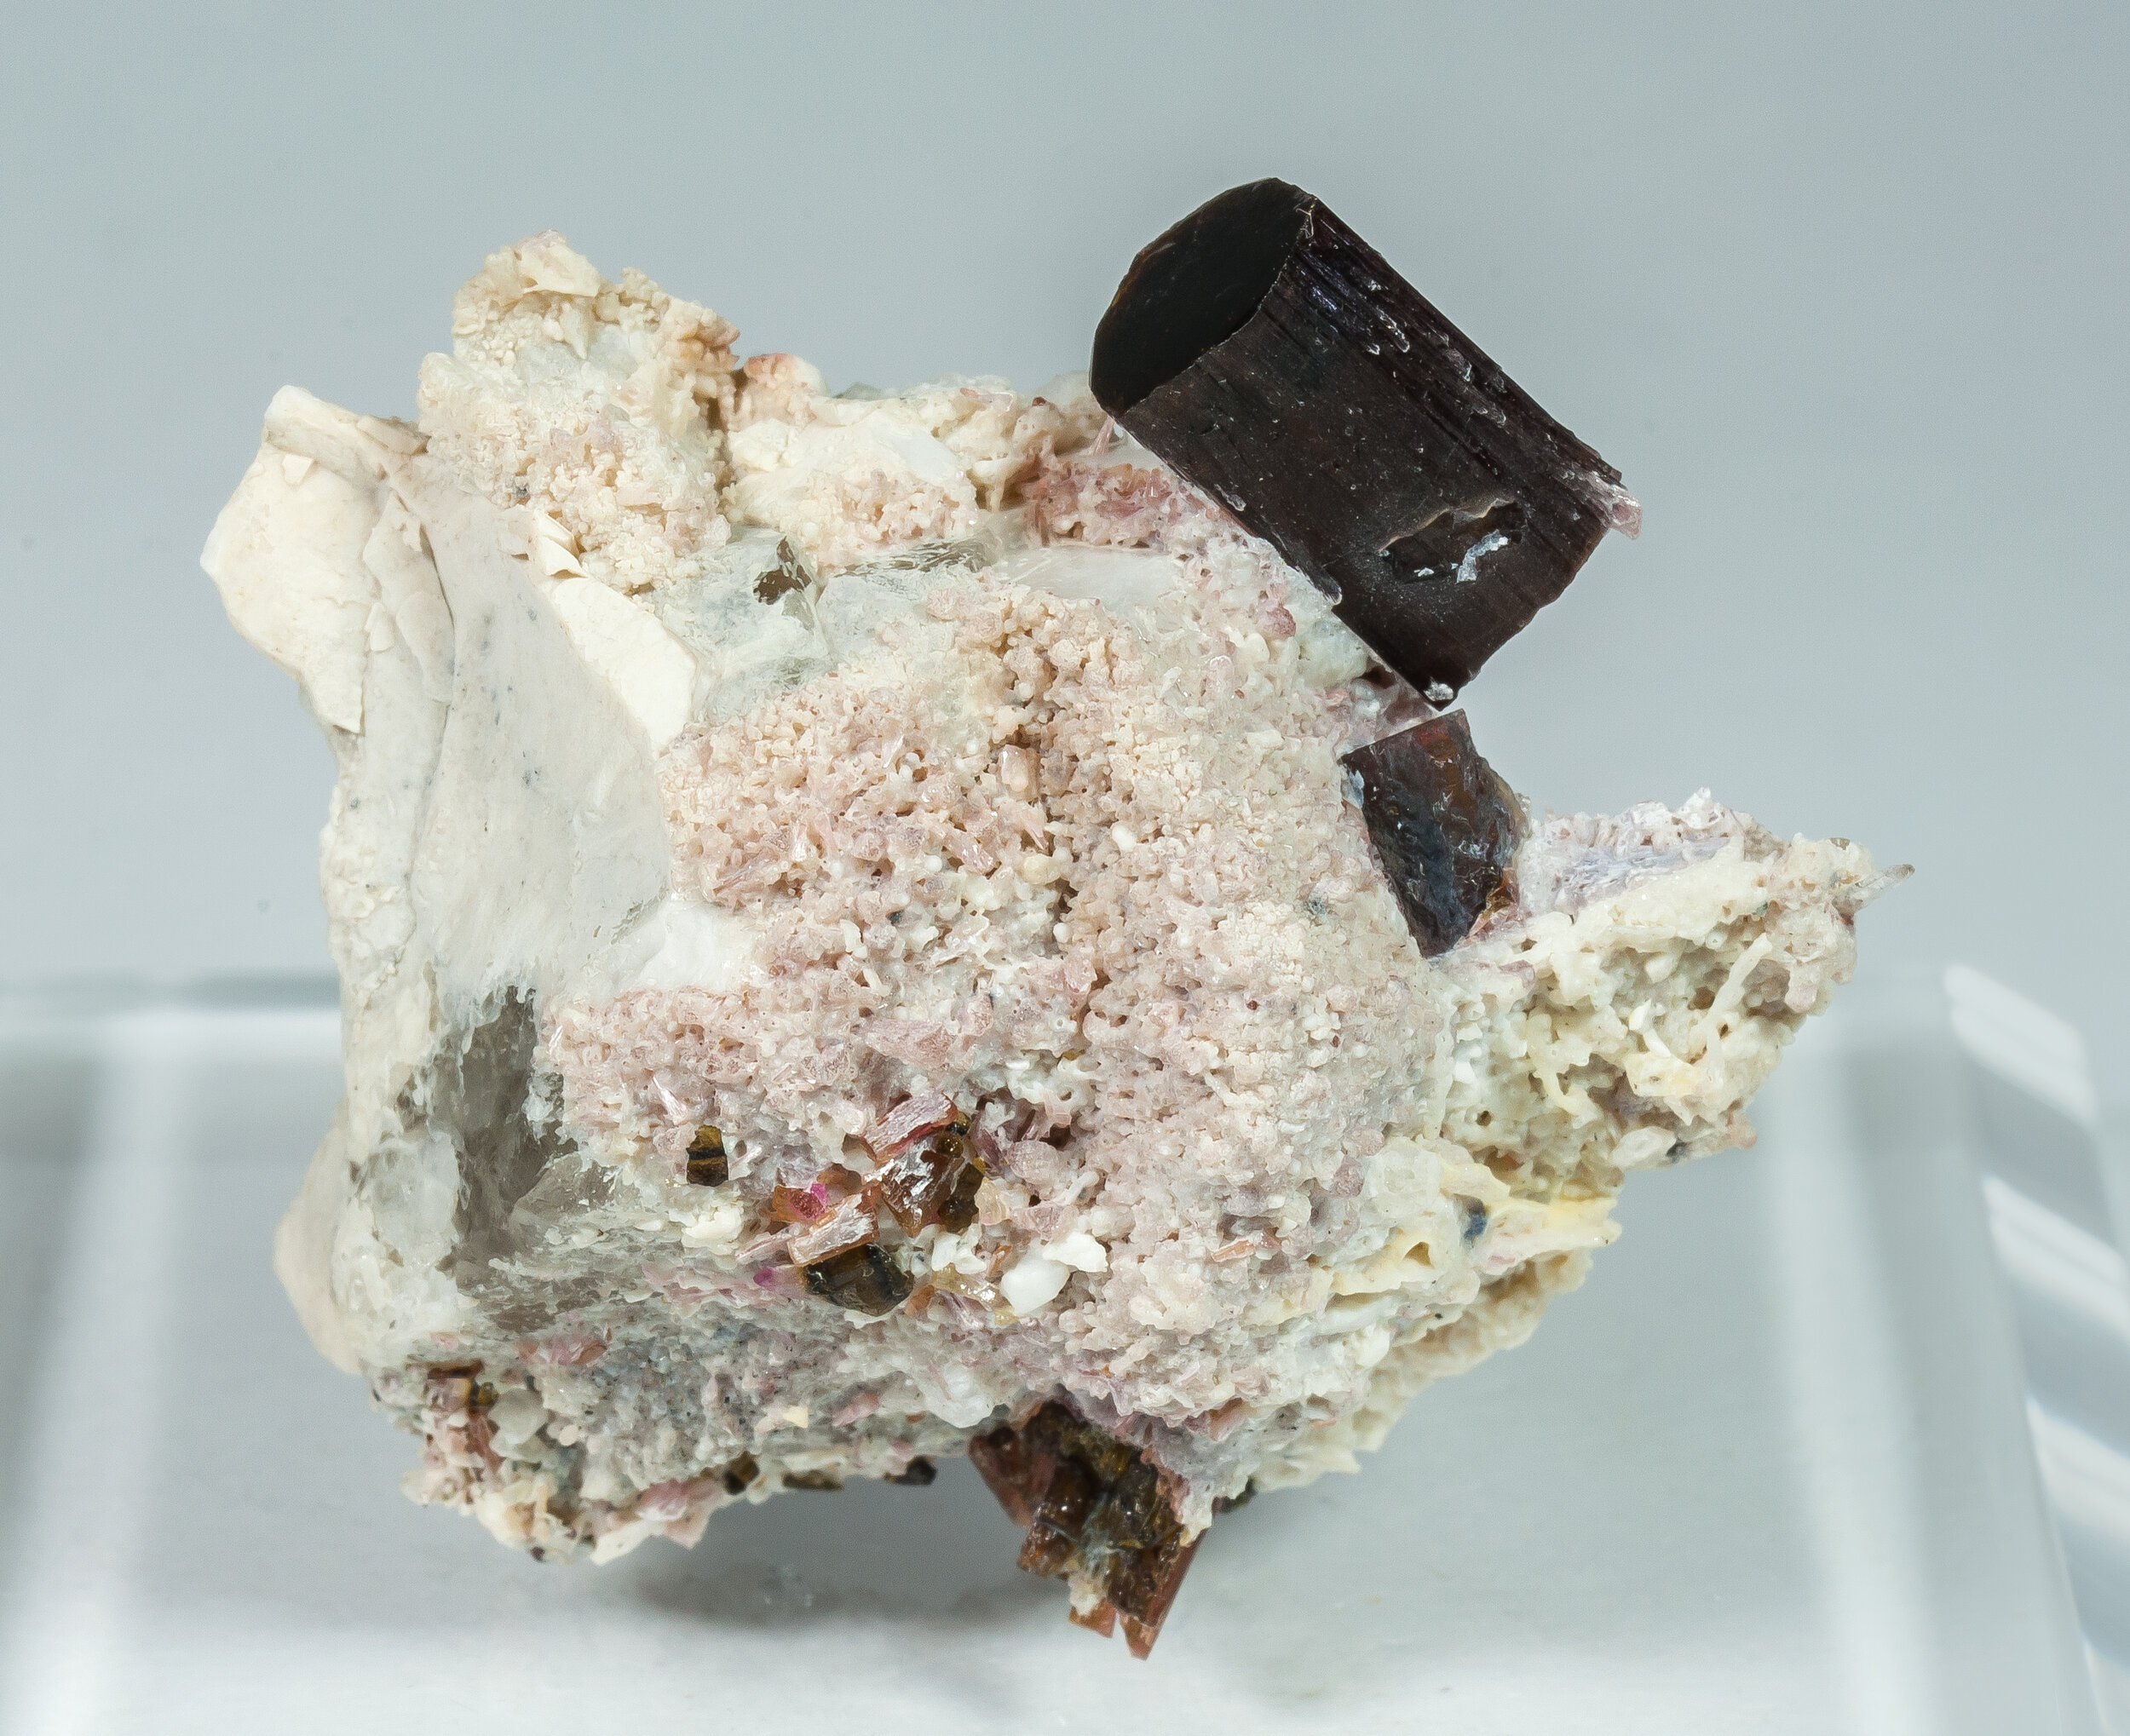 specimens/s_imagesAP3/Elbaite-MTR56AP3f1.jpg